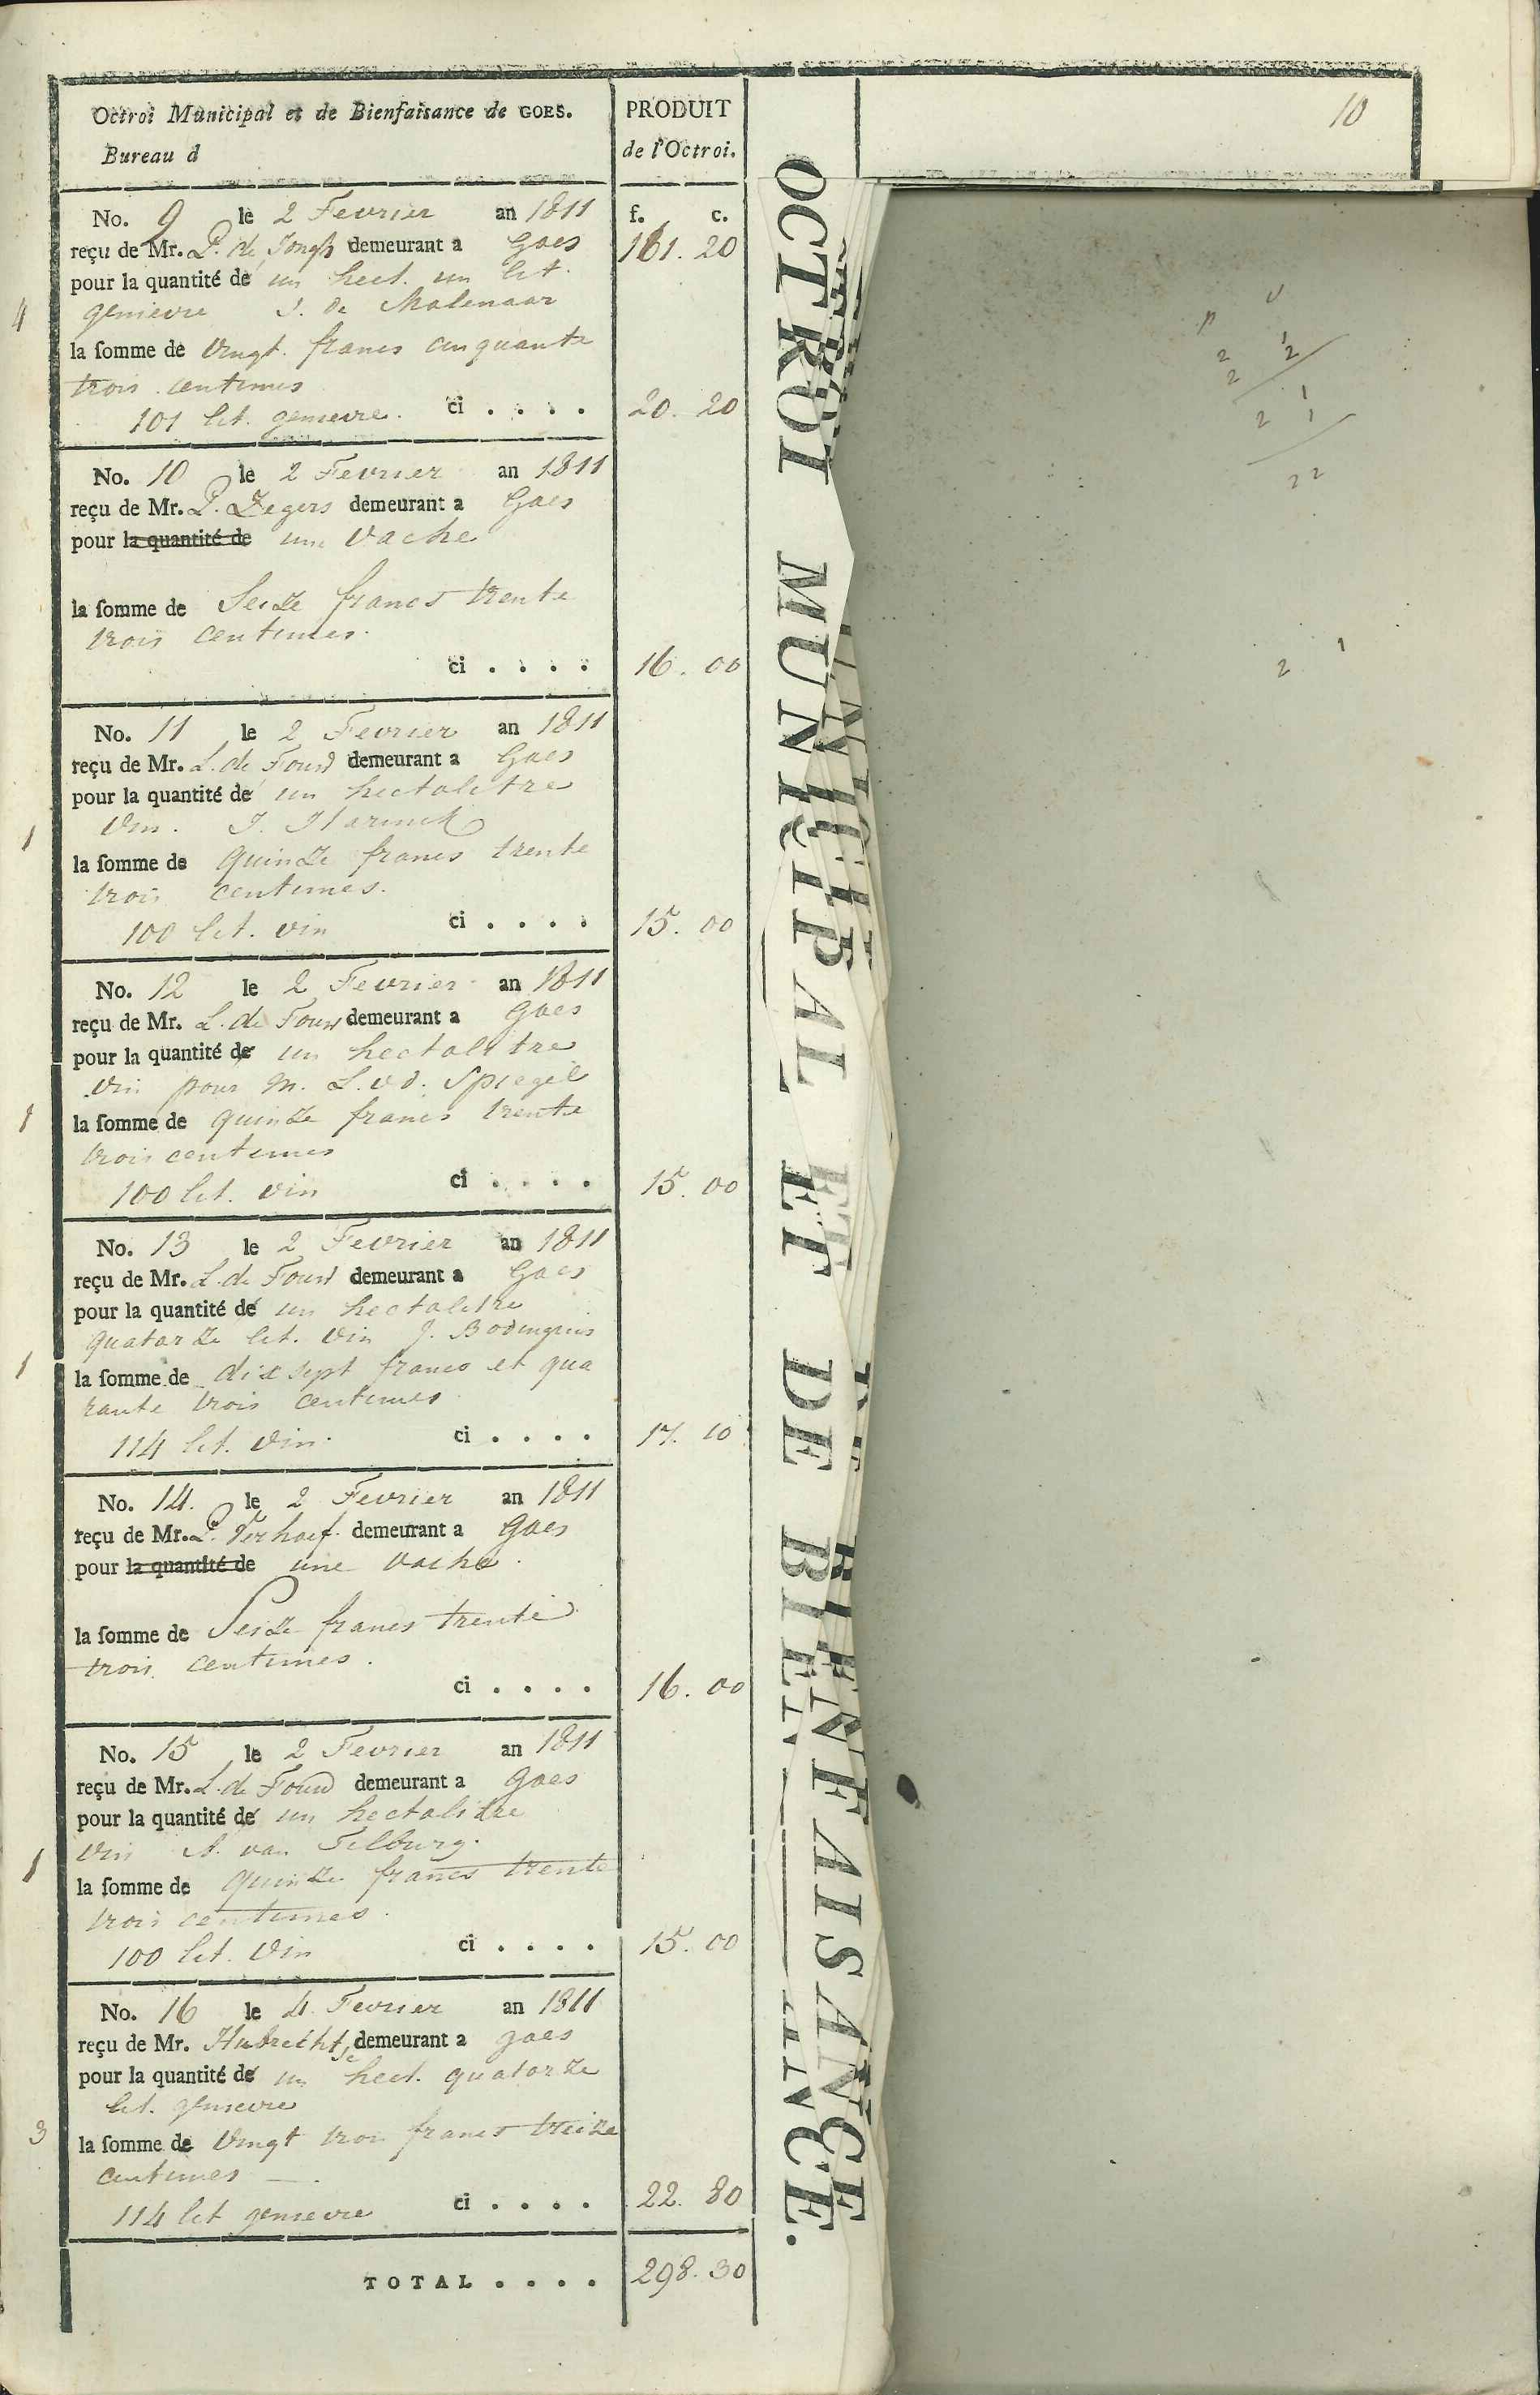 Register met uitgereikte betalingsbewijsjes voor invoerrechten op consumptiegoederen, 1811.